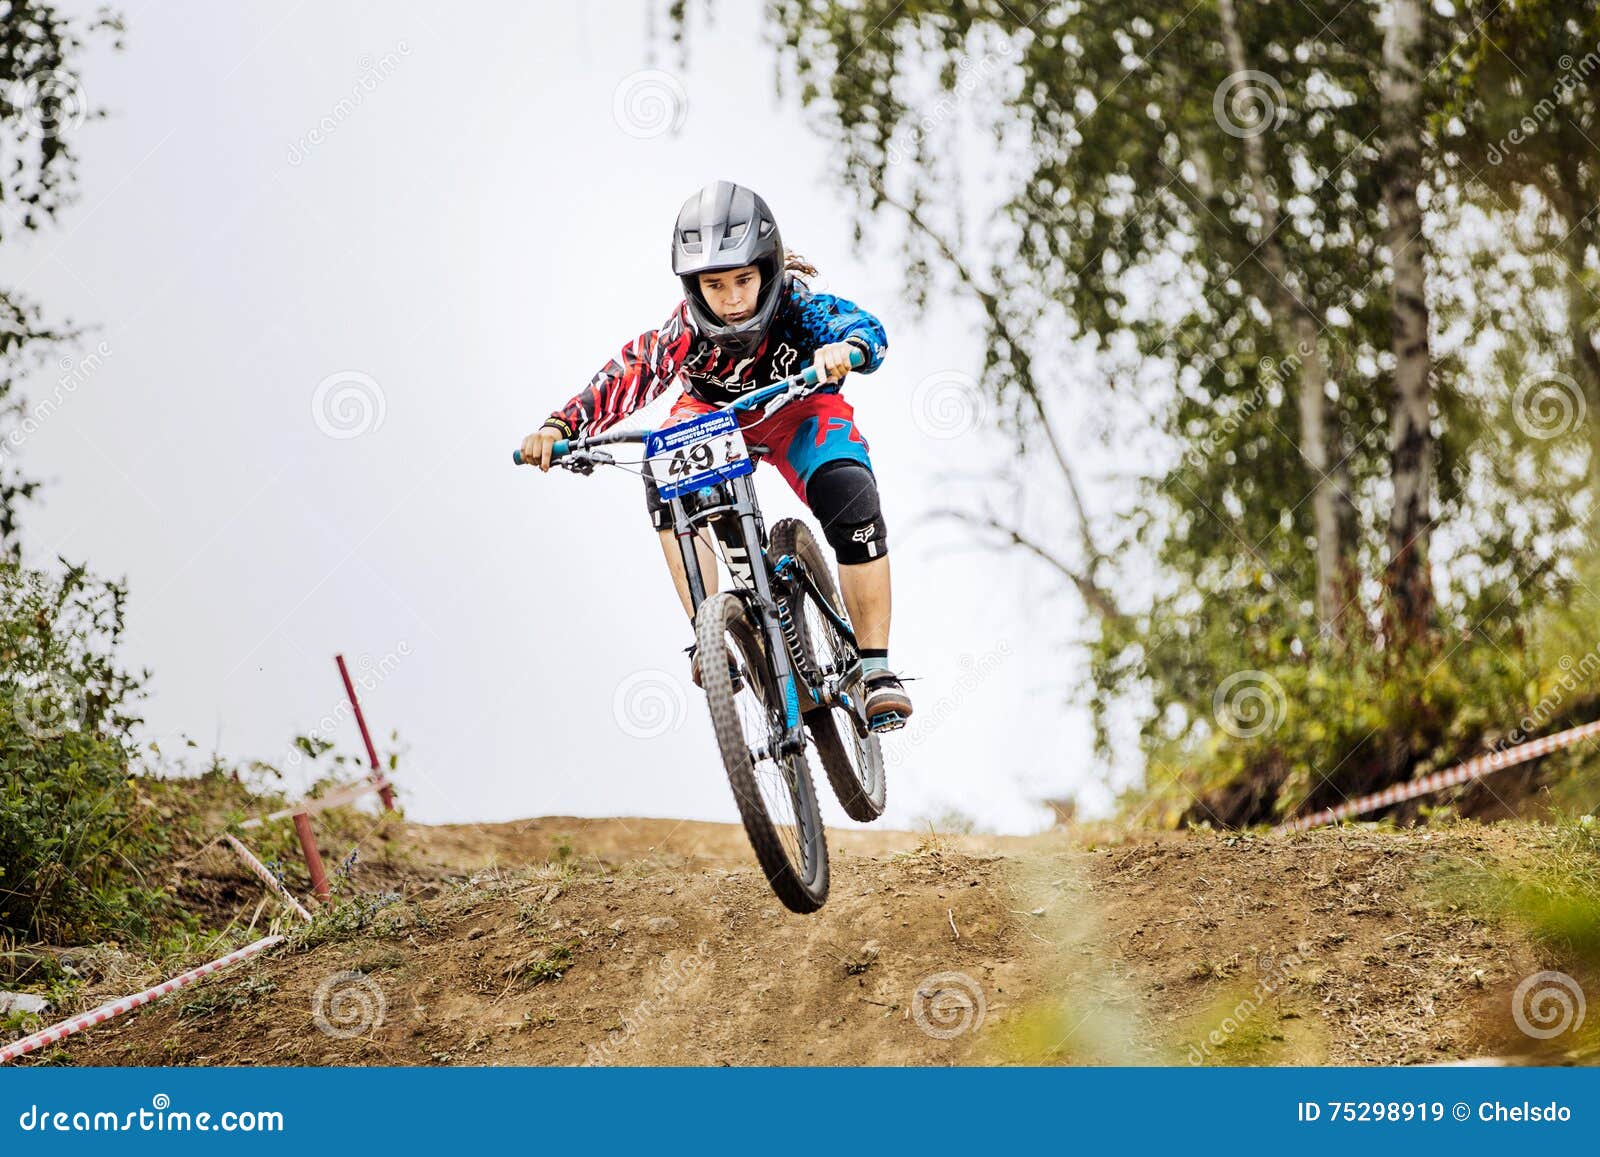 girl downhill mountain bike